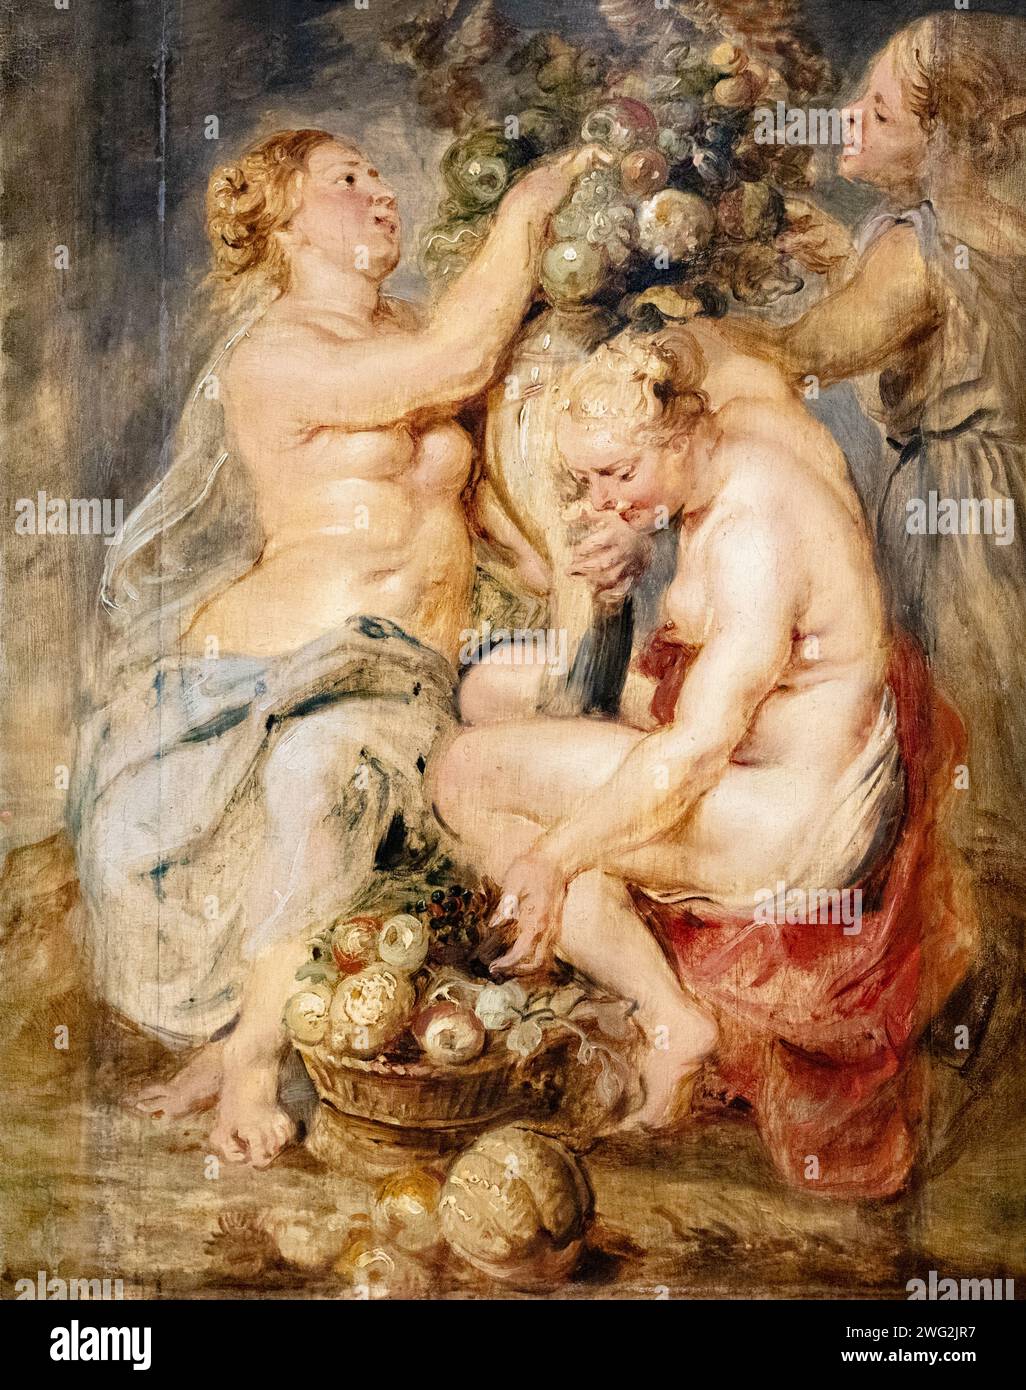 Peter Paul Rubens Gemälde; 'drei Nymphen mit einer Füllung', c1625-8; Öl auf Eichenplatte. Ceres, Göttin des Überflusses, mit einer Fülle von Früchten. Stockfoto